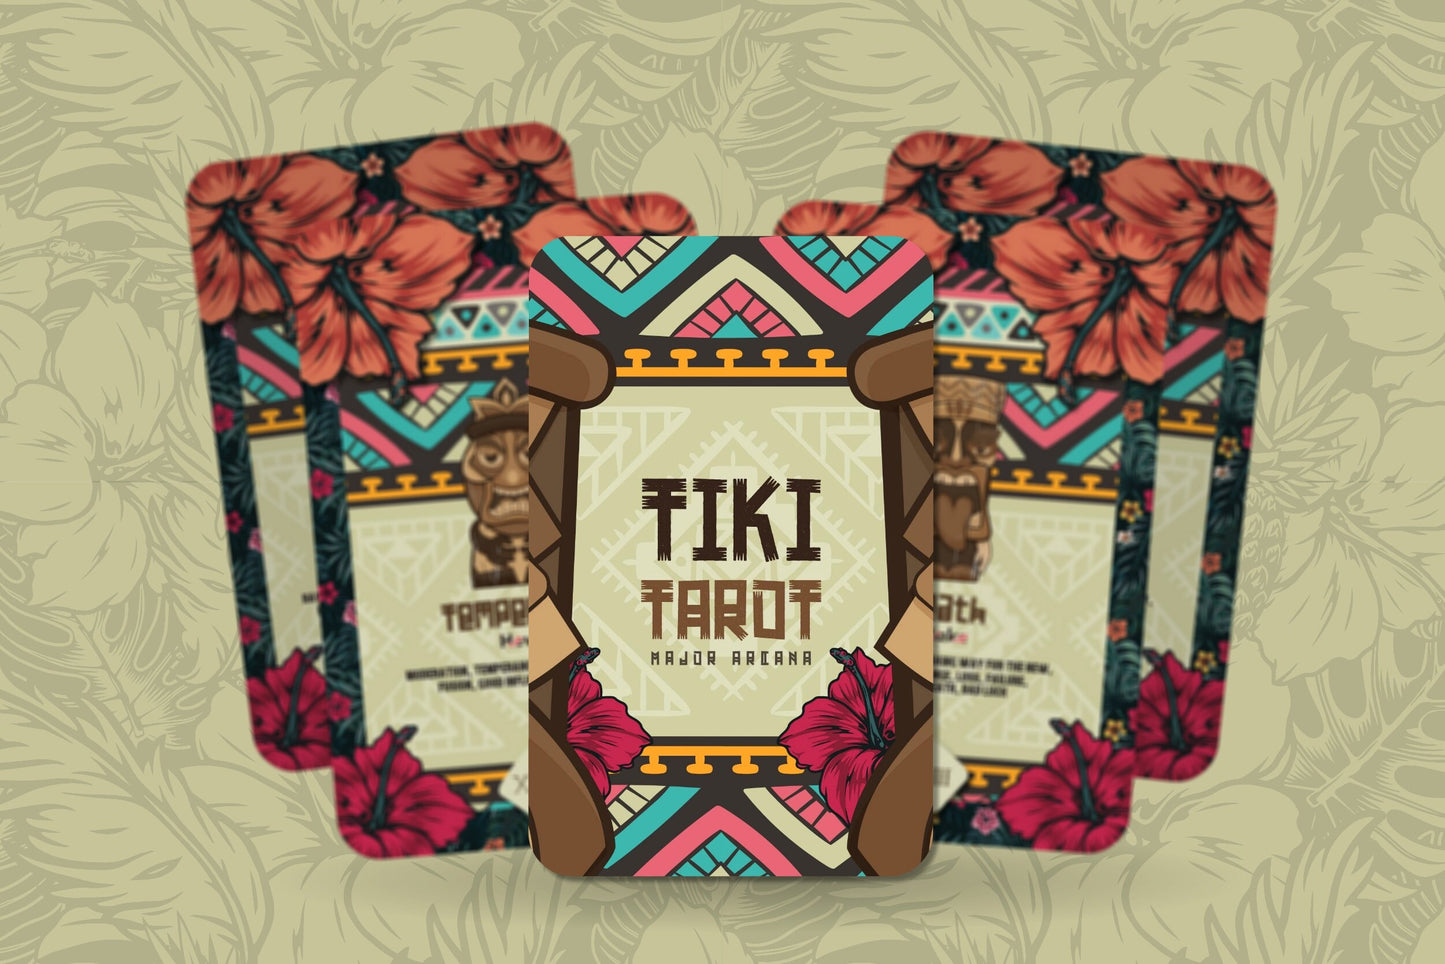 Tiki Tarot - Major Arcana